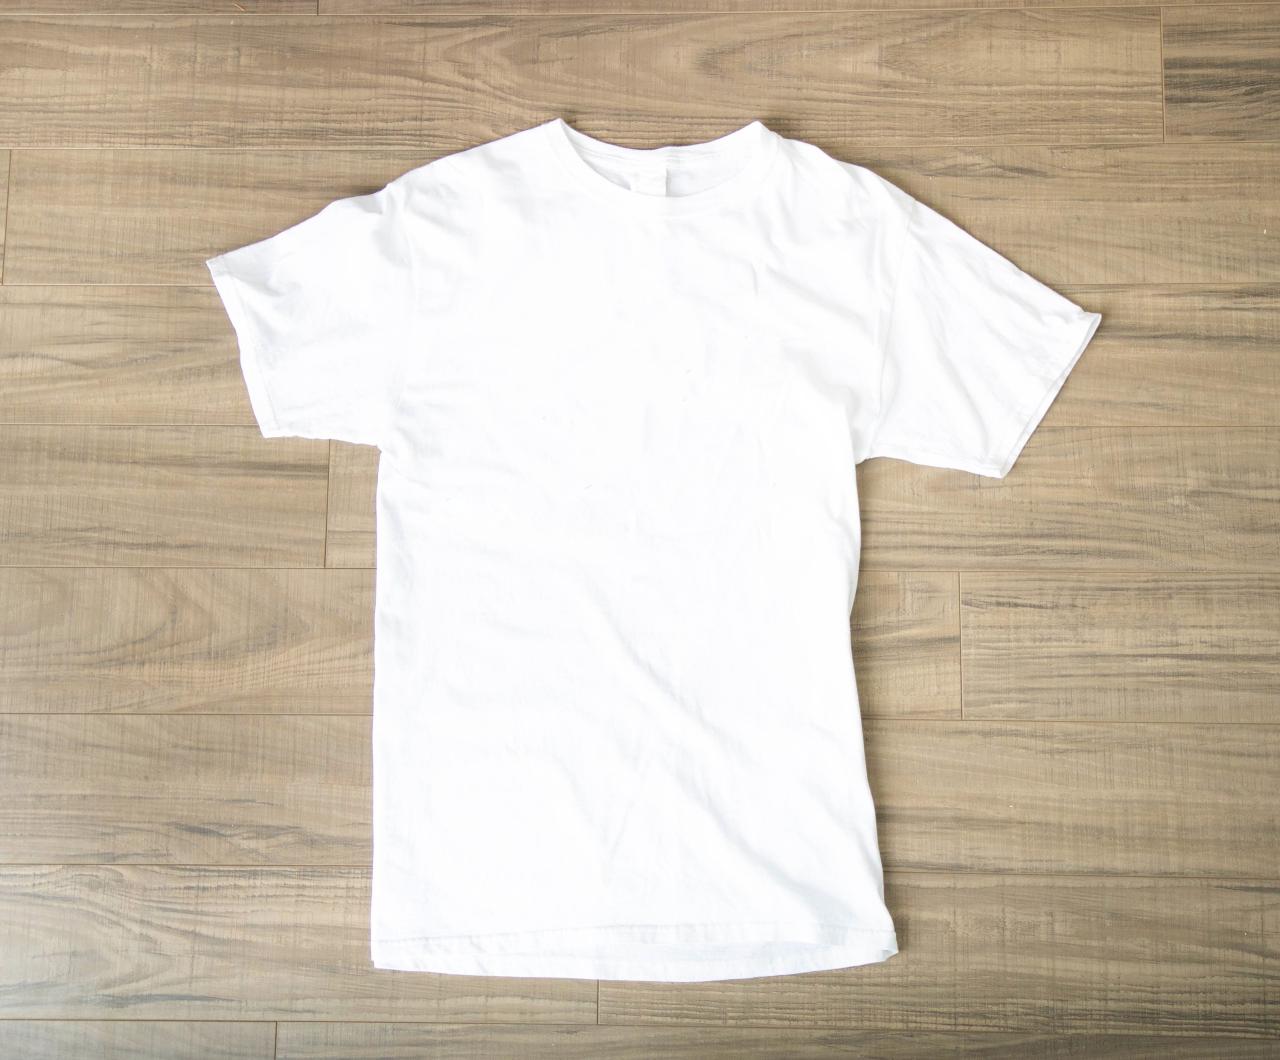 Plain Shirt Mockup